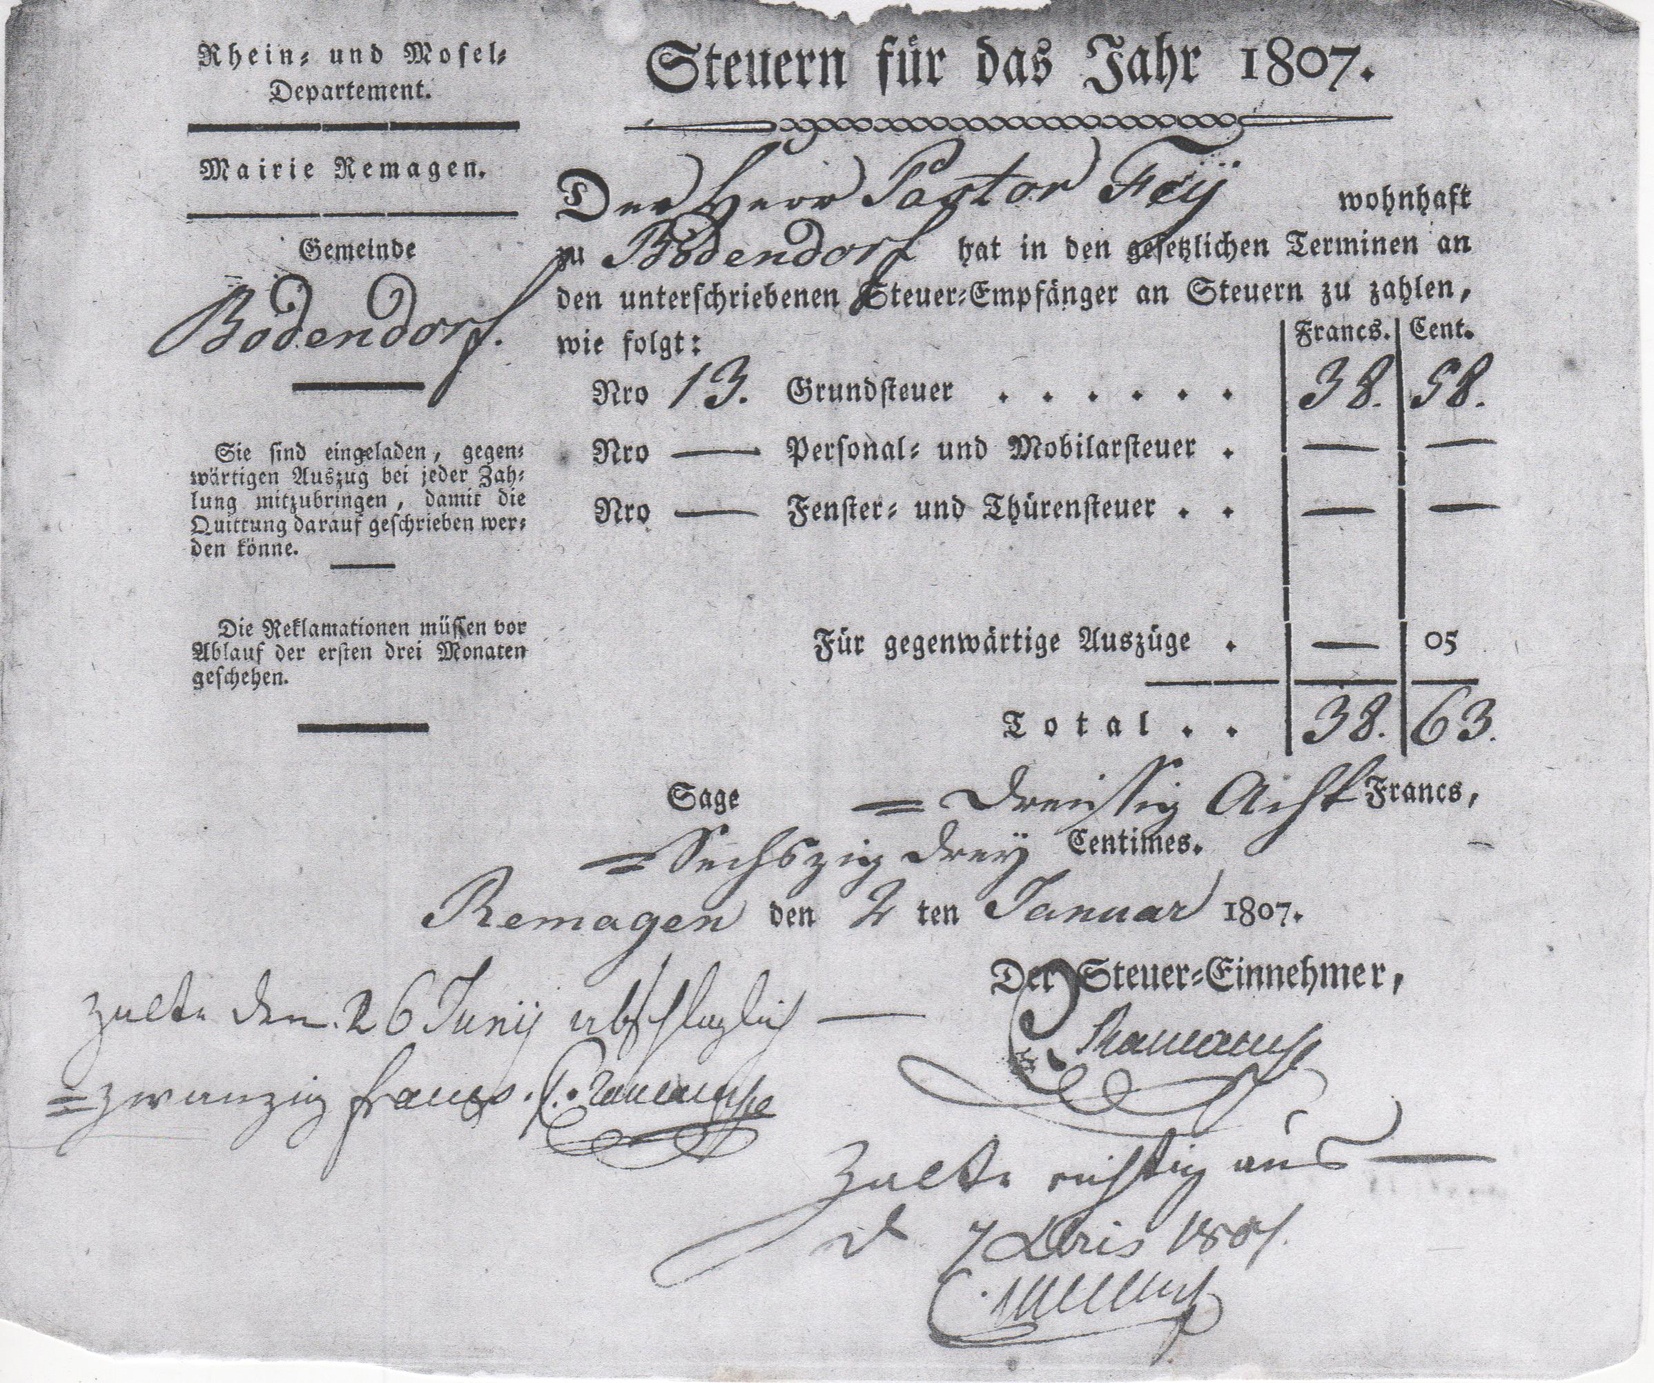 Steuerbescheid für das Jahr 1807 von Mairie Remagen an Pastor Fey (Heimatmuseum und -Archiv Bad Bodendorf CC BY-NC-SA)